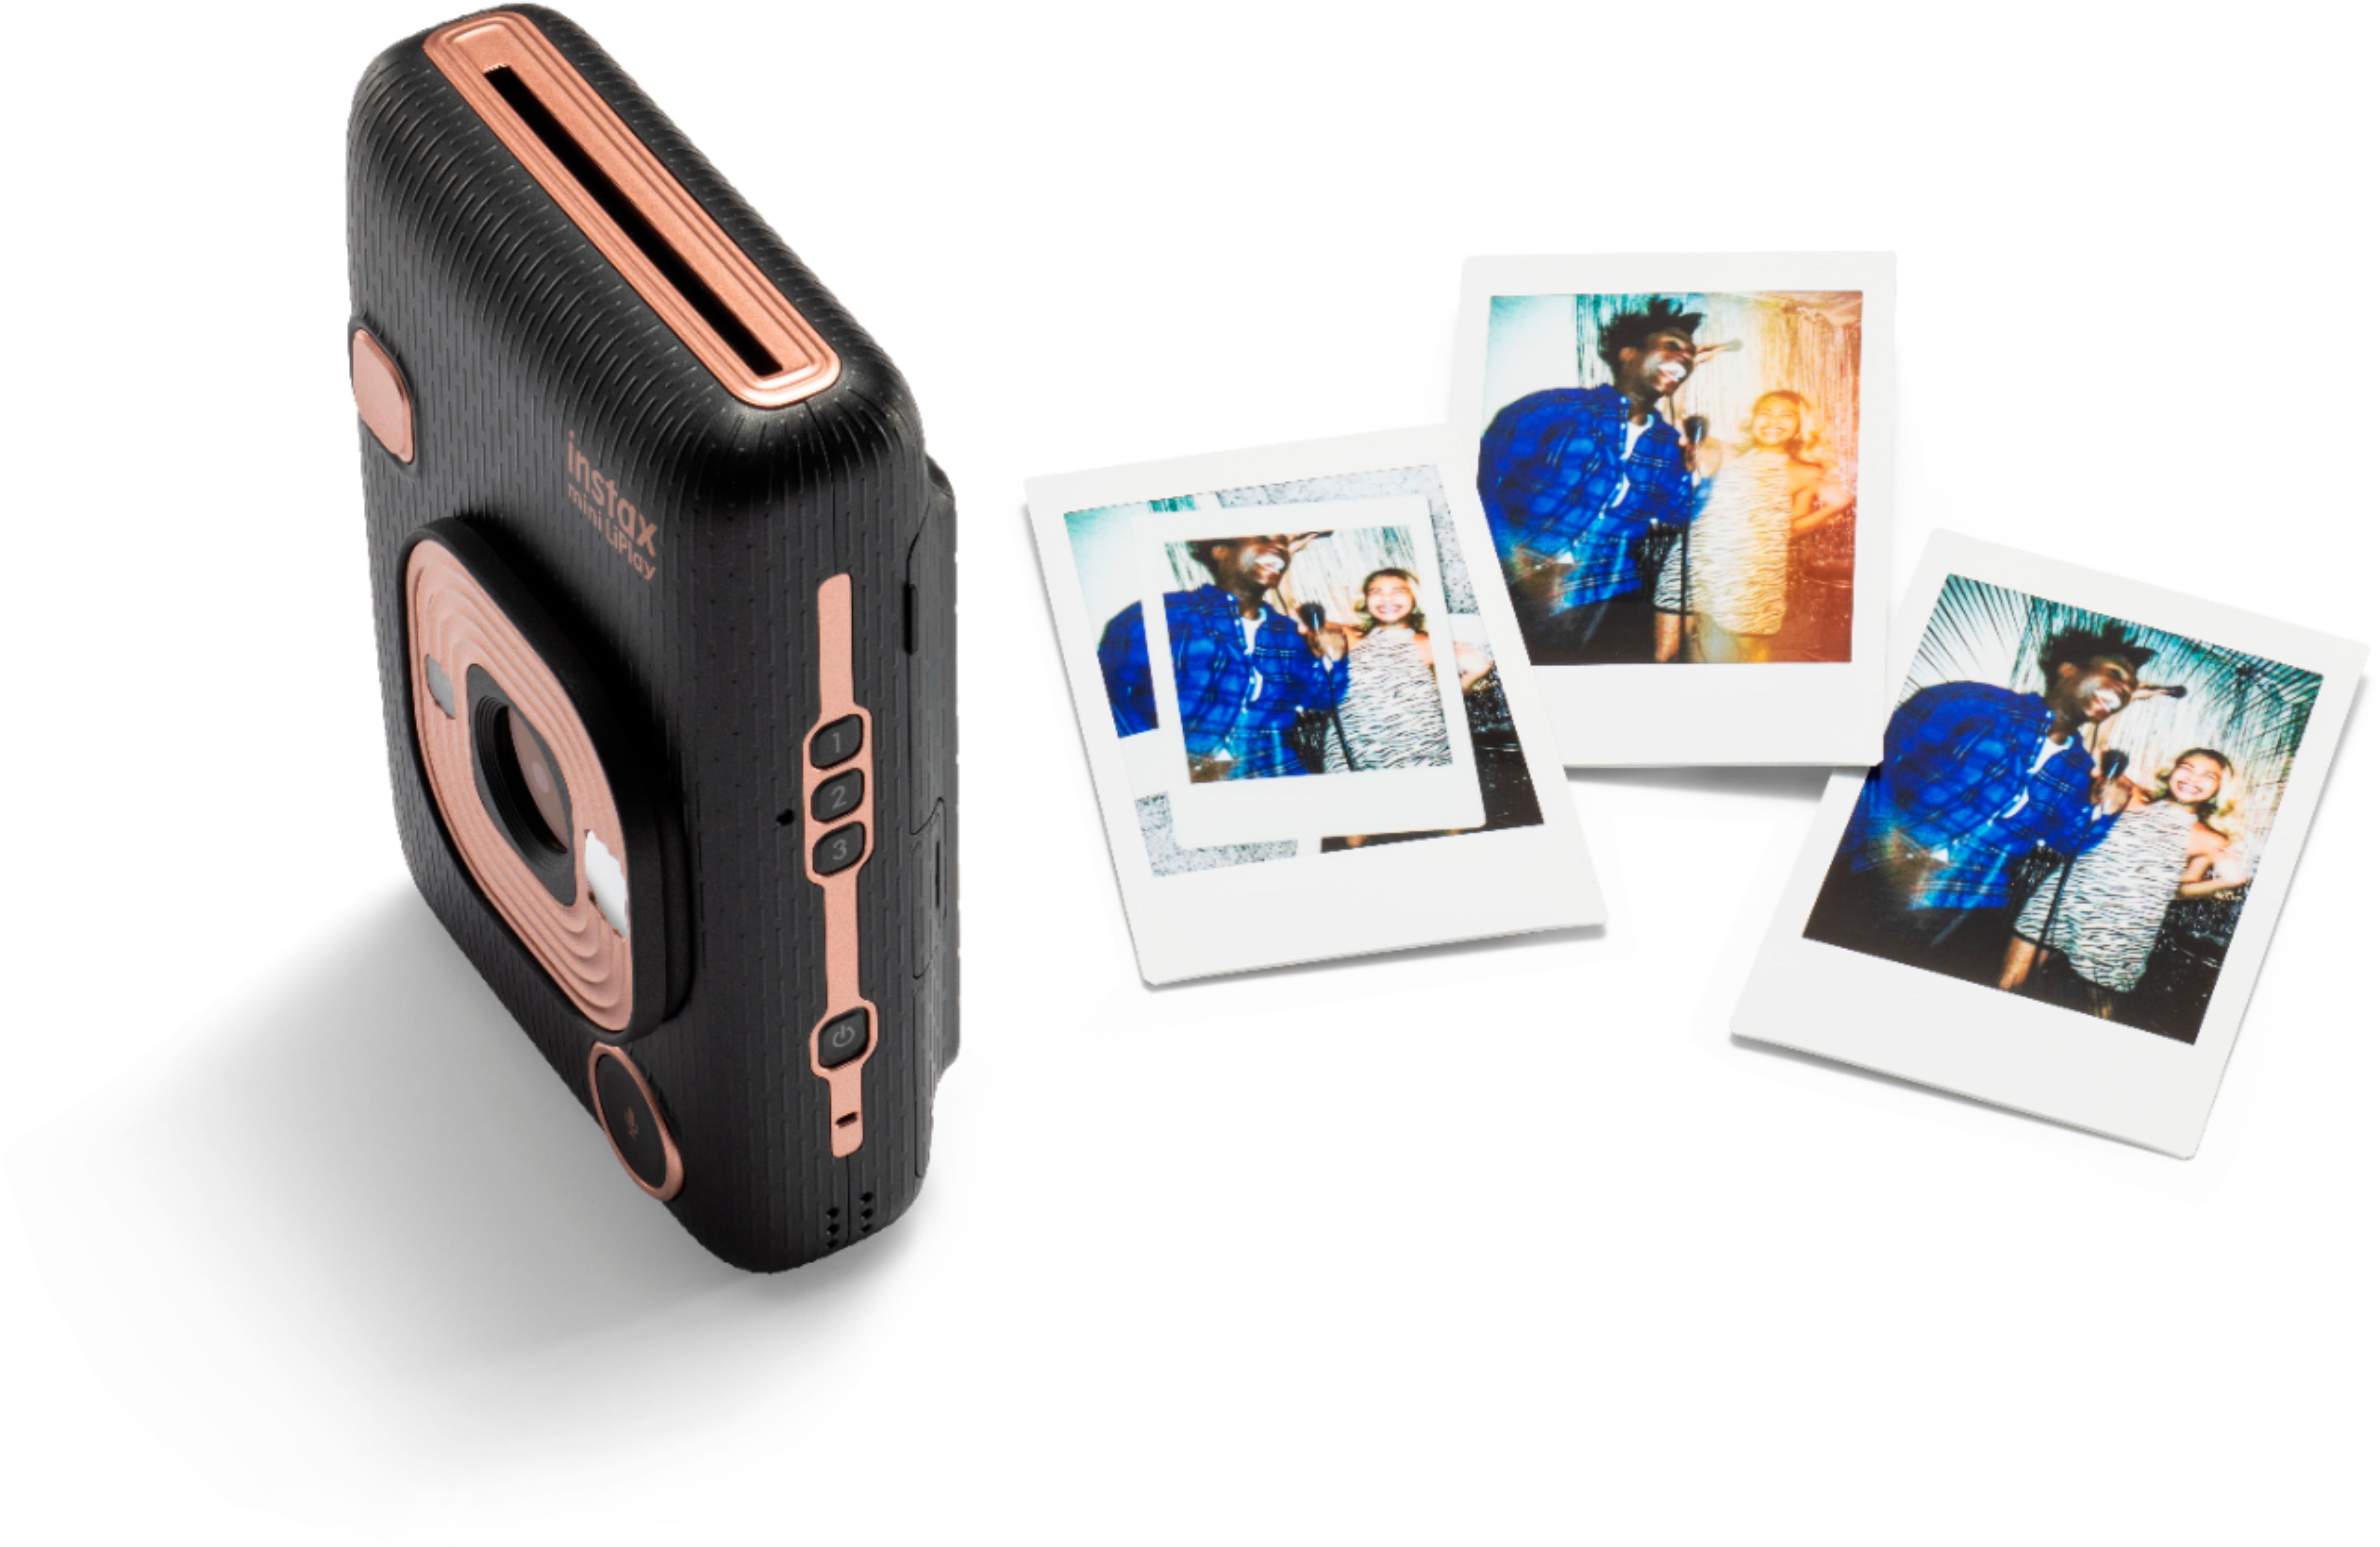 カメラ デジタルカメラ Fujifilm instax mini LiPlay Instant Film Camera Elegant Black 16631813 -  Best Buy